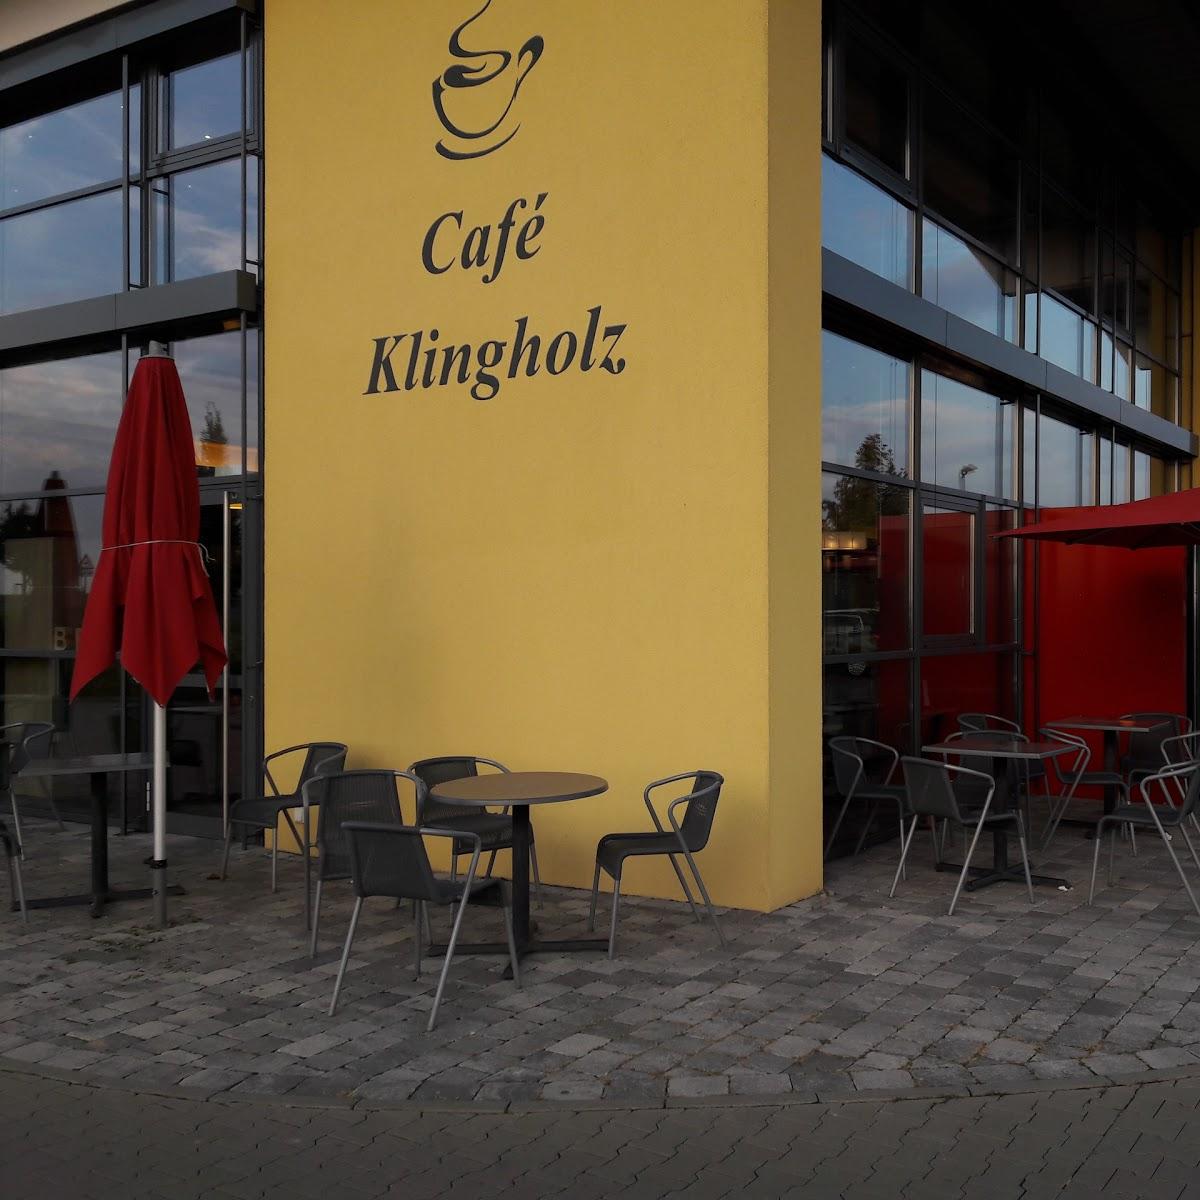 Restaurant "Café Klingholz - Bäckerei Spiegel" in Reichenberg